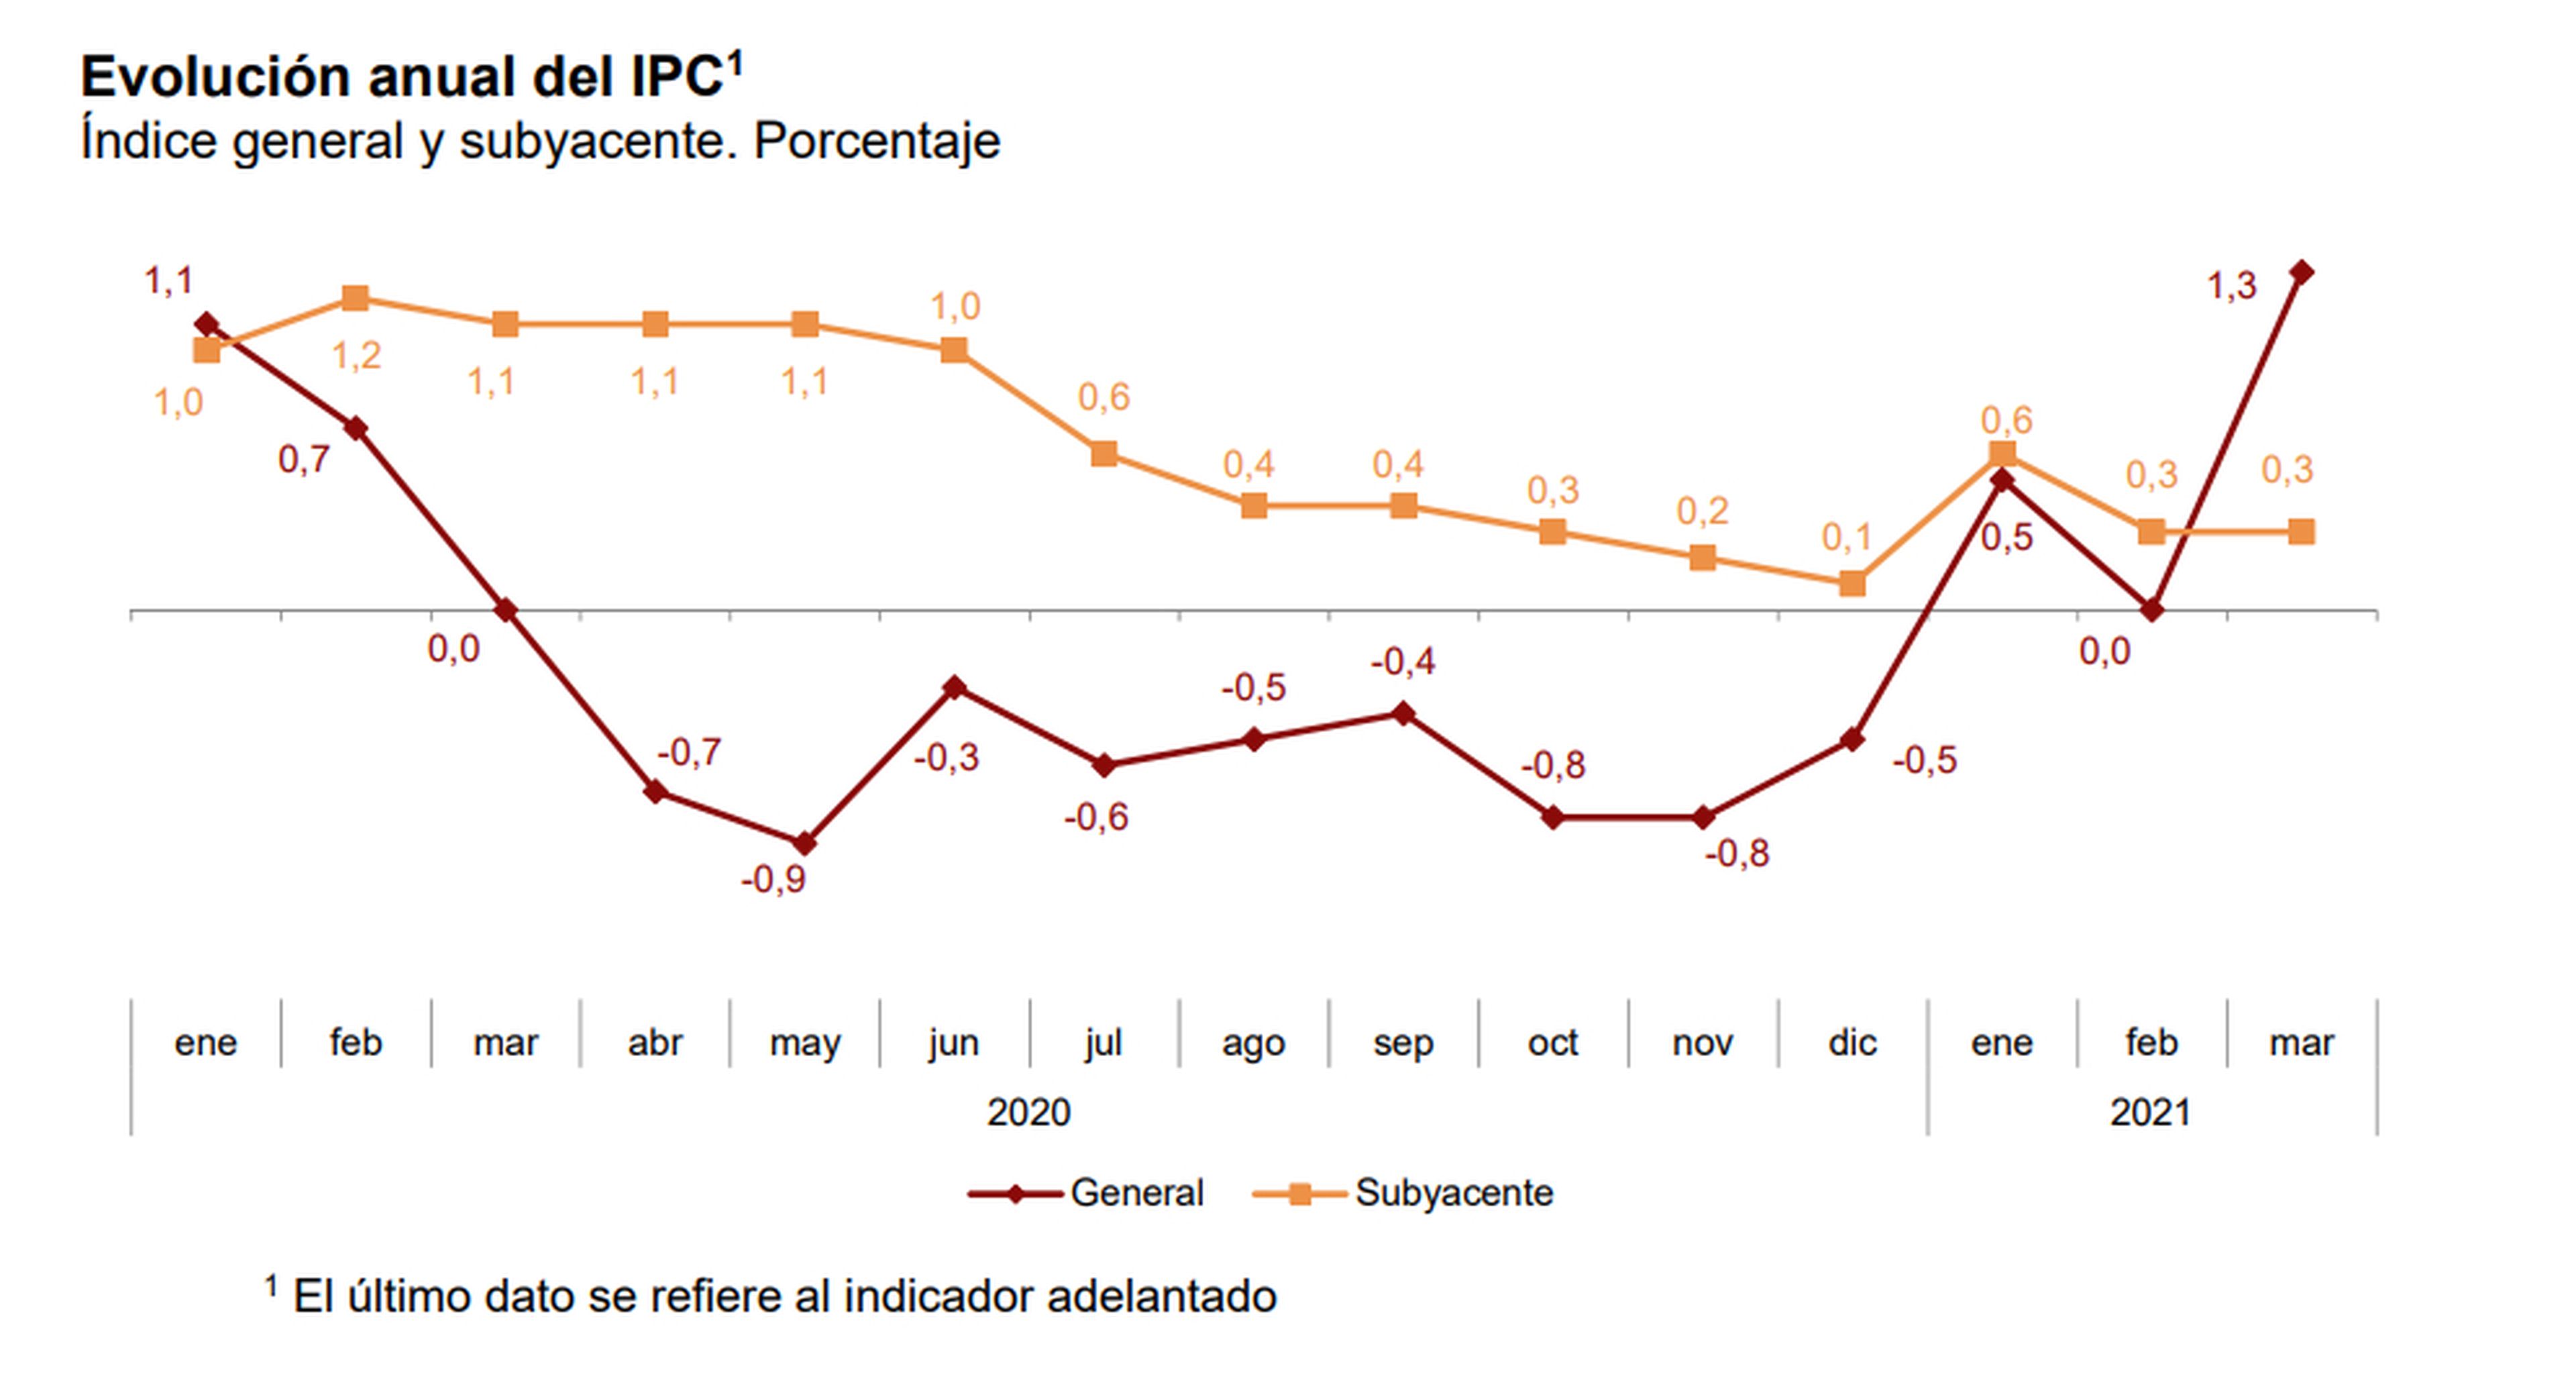 Evolución anual del IPC entre enero de 2020 y marzo de 2021, en el índice general y subyacente